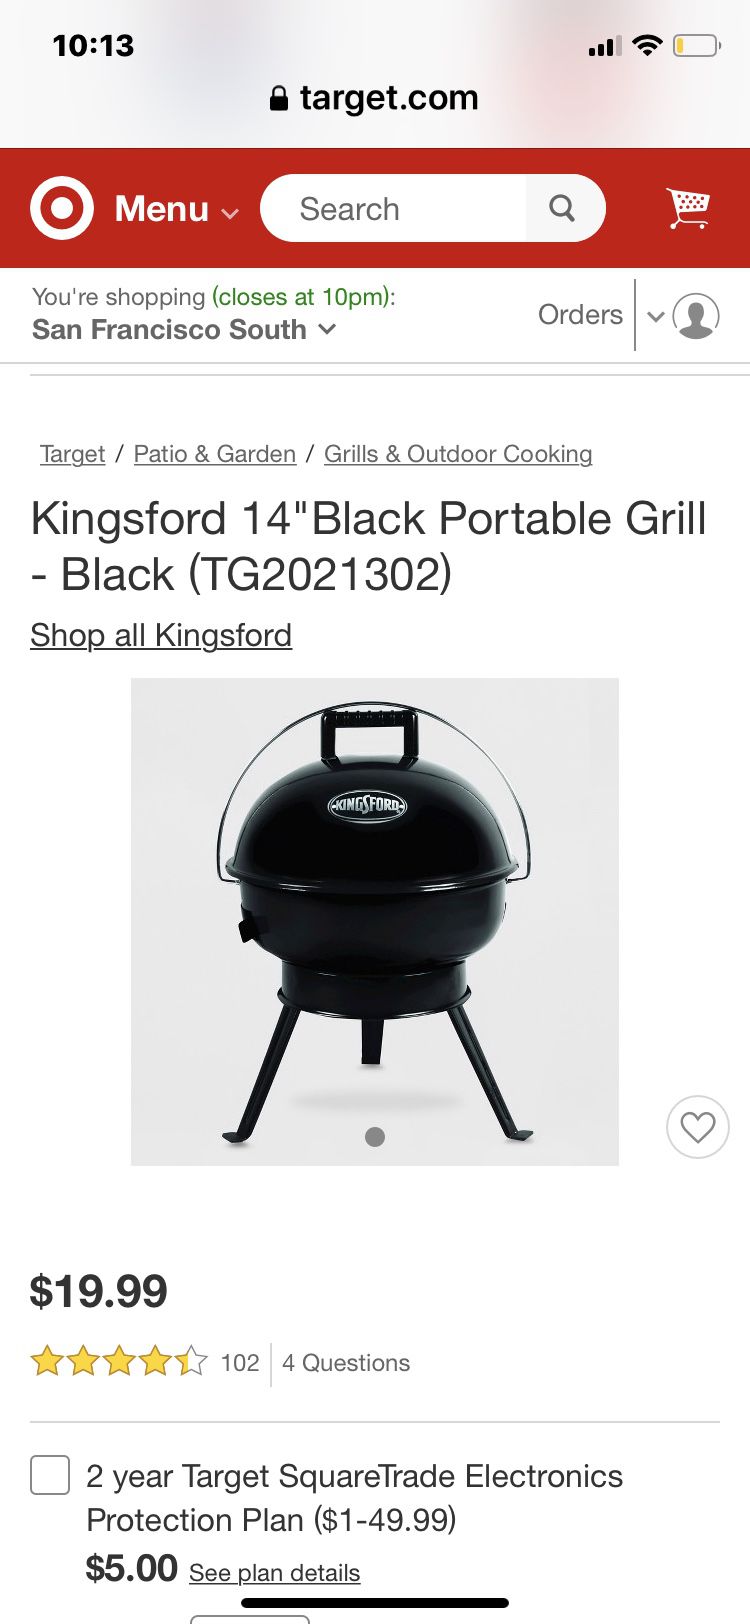 14” black portable grill